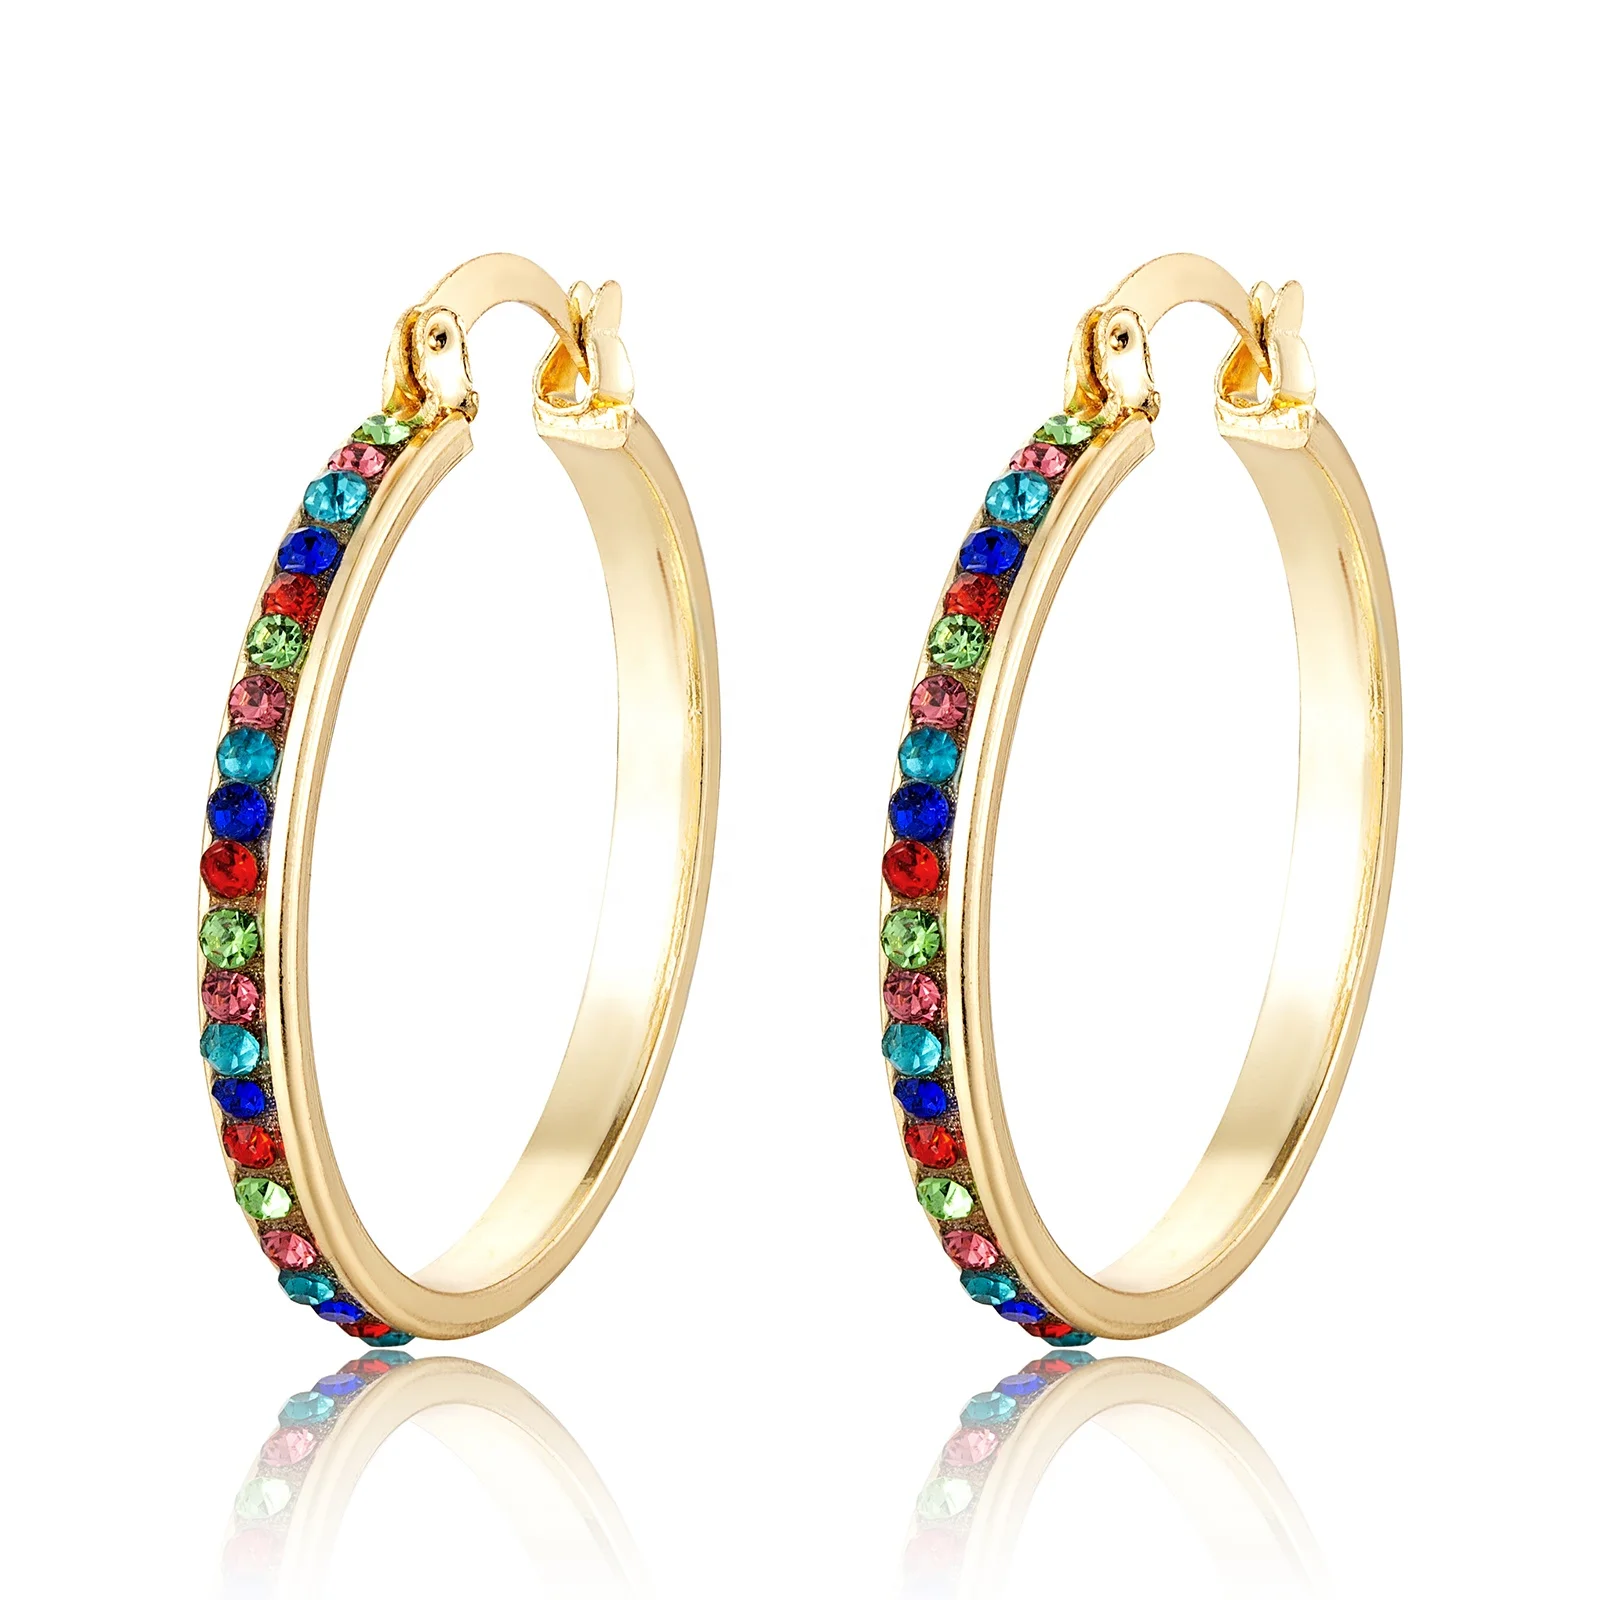 

Elfic Luxury Hoop earrings Tricolor Gold Plated 14k Earrings Trends Jewelry Wholesale CZ Earrings Aretes de Oro Laminado